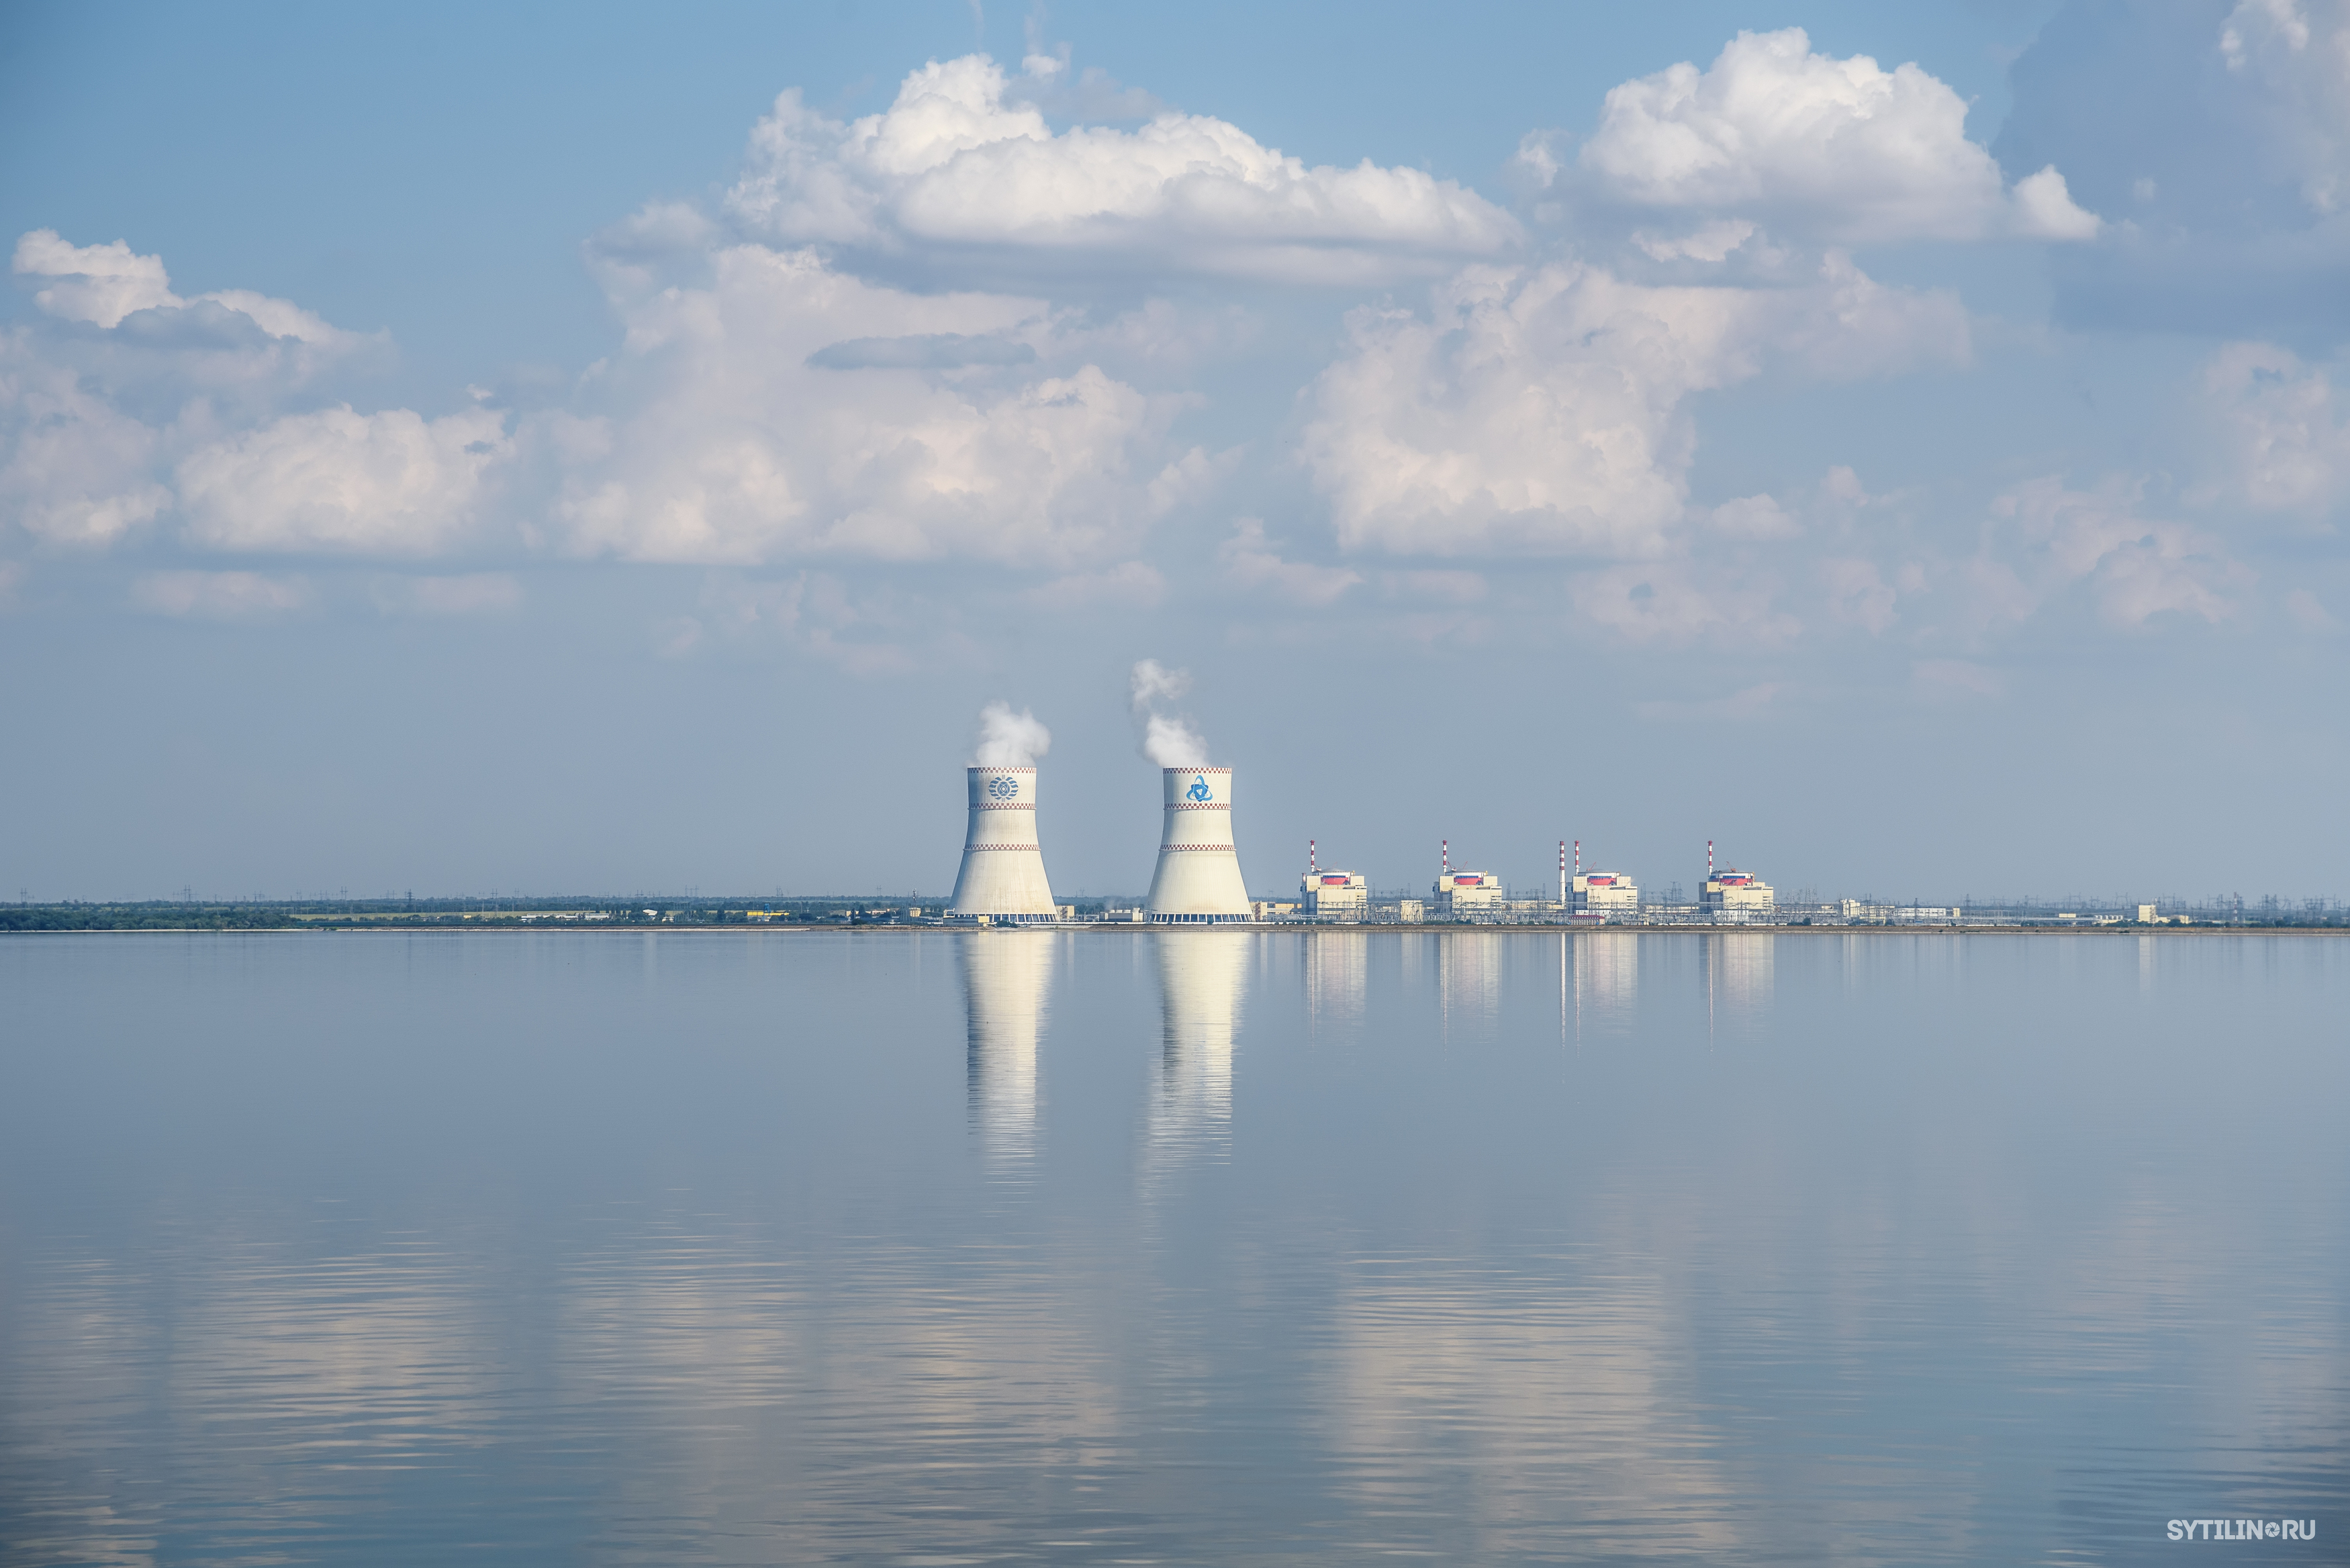 Ростовская атомная электростанция,АЭС,Цимлянское водохранилище,мирный,реактор,атом,энергетика,экология,экологичный,экологический,облака,вода,небо,чистый,отражение,безопасный,энергия,энергетический,электроэнергия,электроэнергетика,атомный,росатом,росэнерго, Сытилин Павел